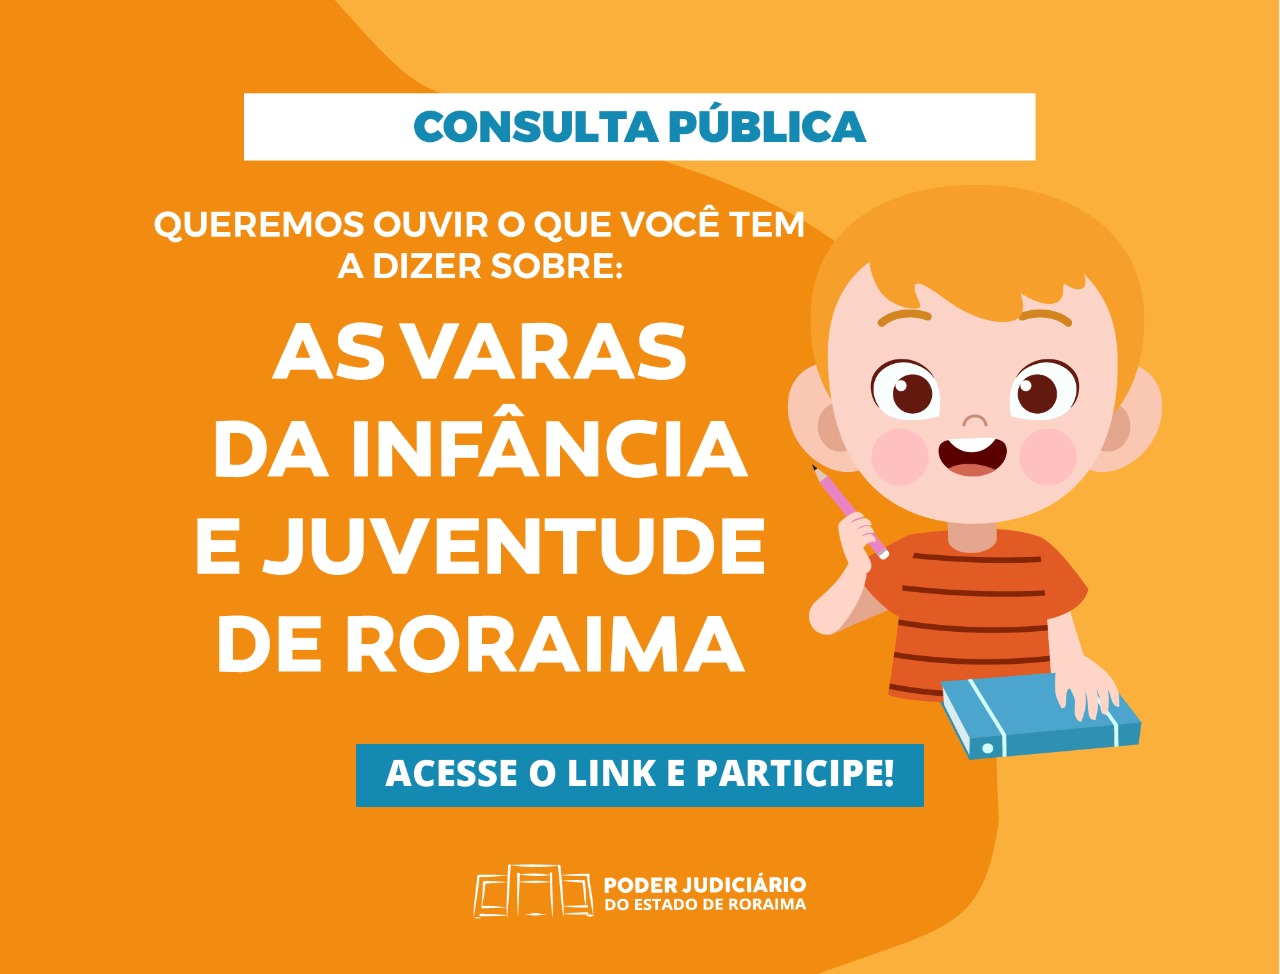 Imagem de divulgação da consulta publica feita pela Vara da infância e juventude de Roraima